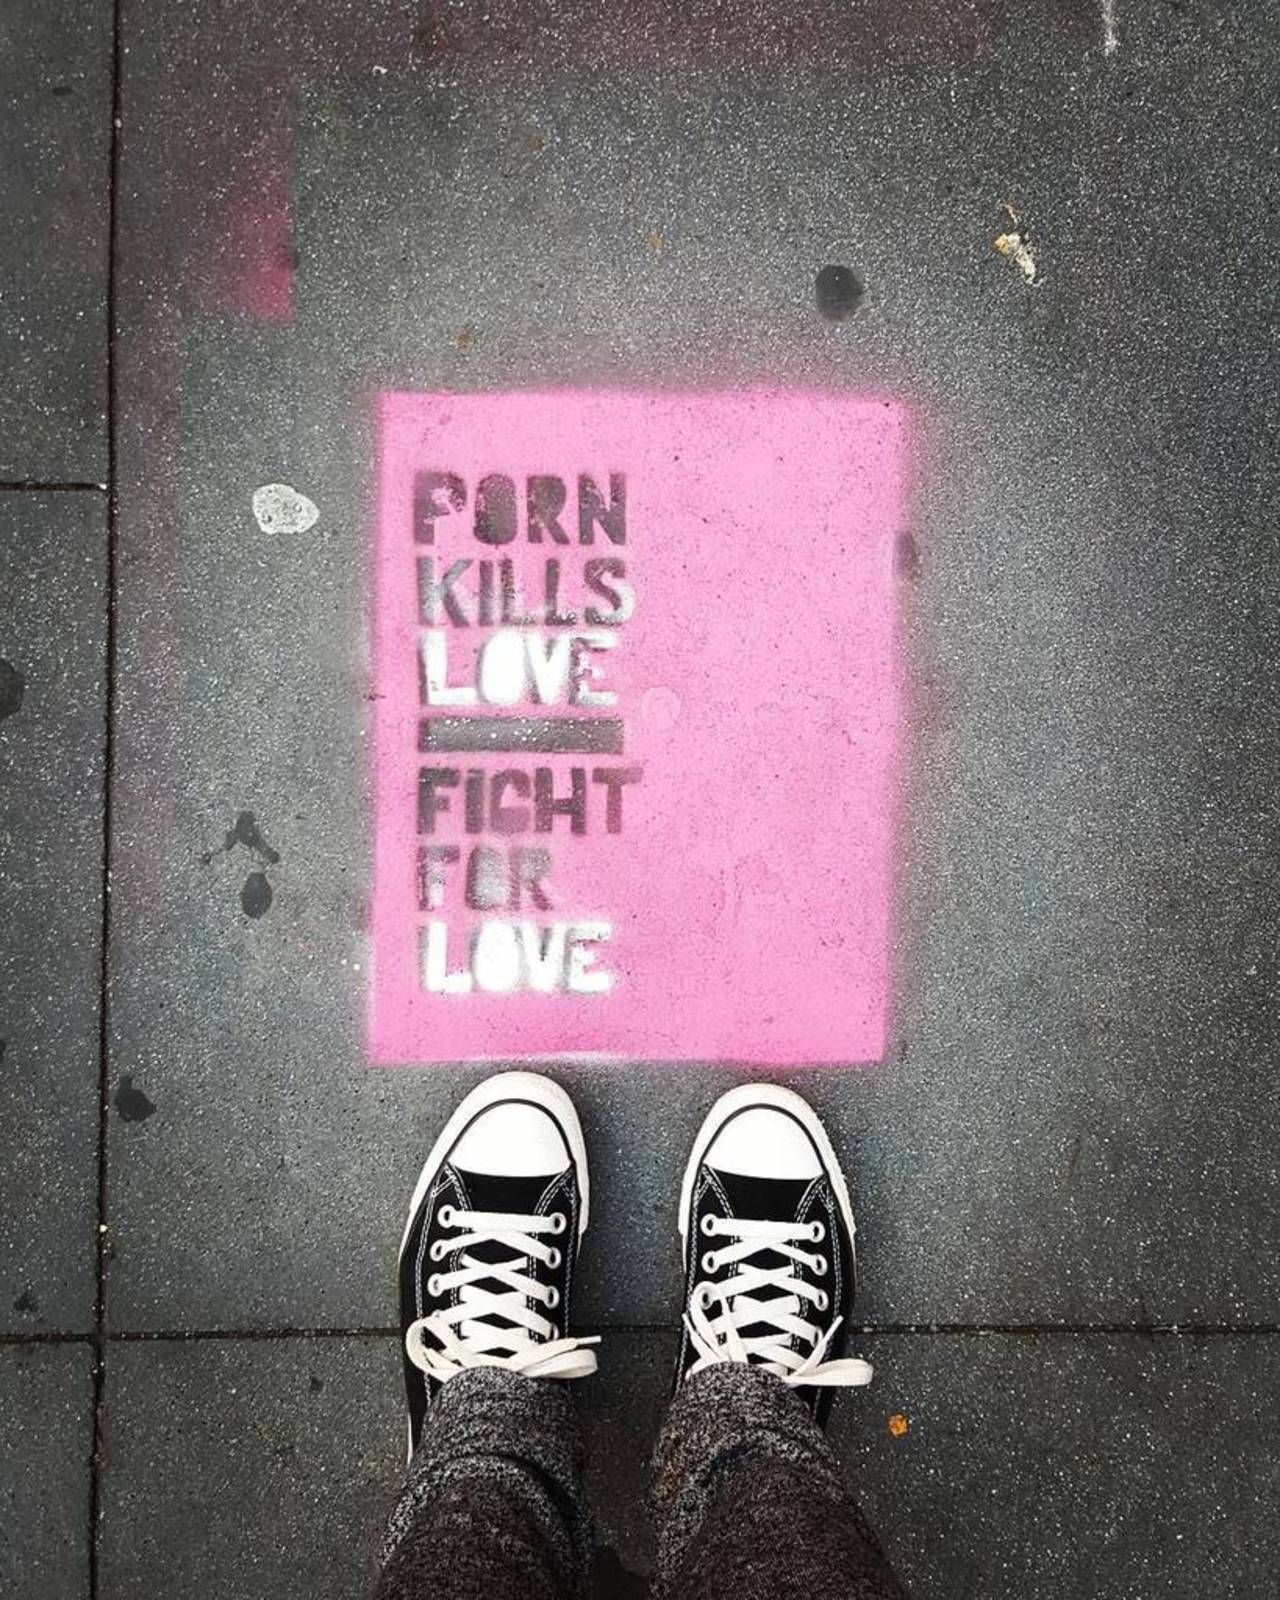 Fight for Love ♡ #Mission #16th #quotes #qotd #streetart #art #graffiti #popart #Love #SF #sidewalk themagicalcupca… http://t.co/3q6iMWxluA